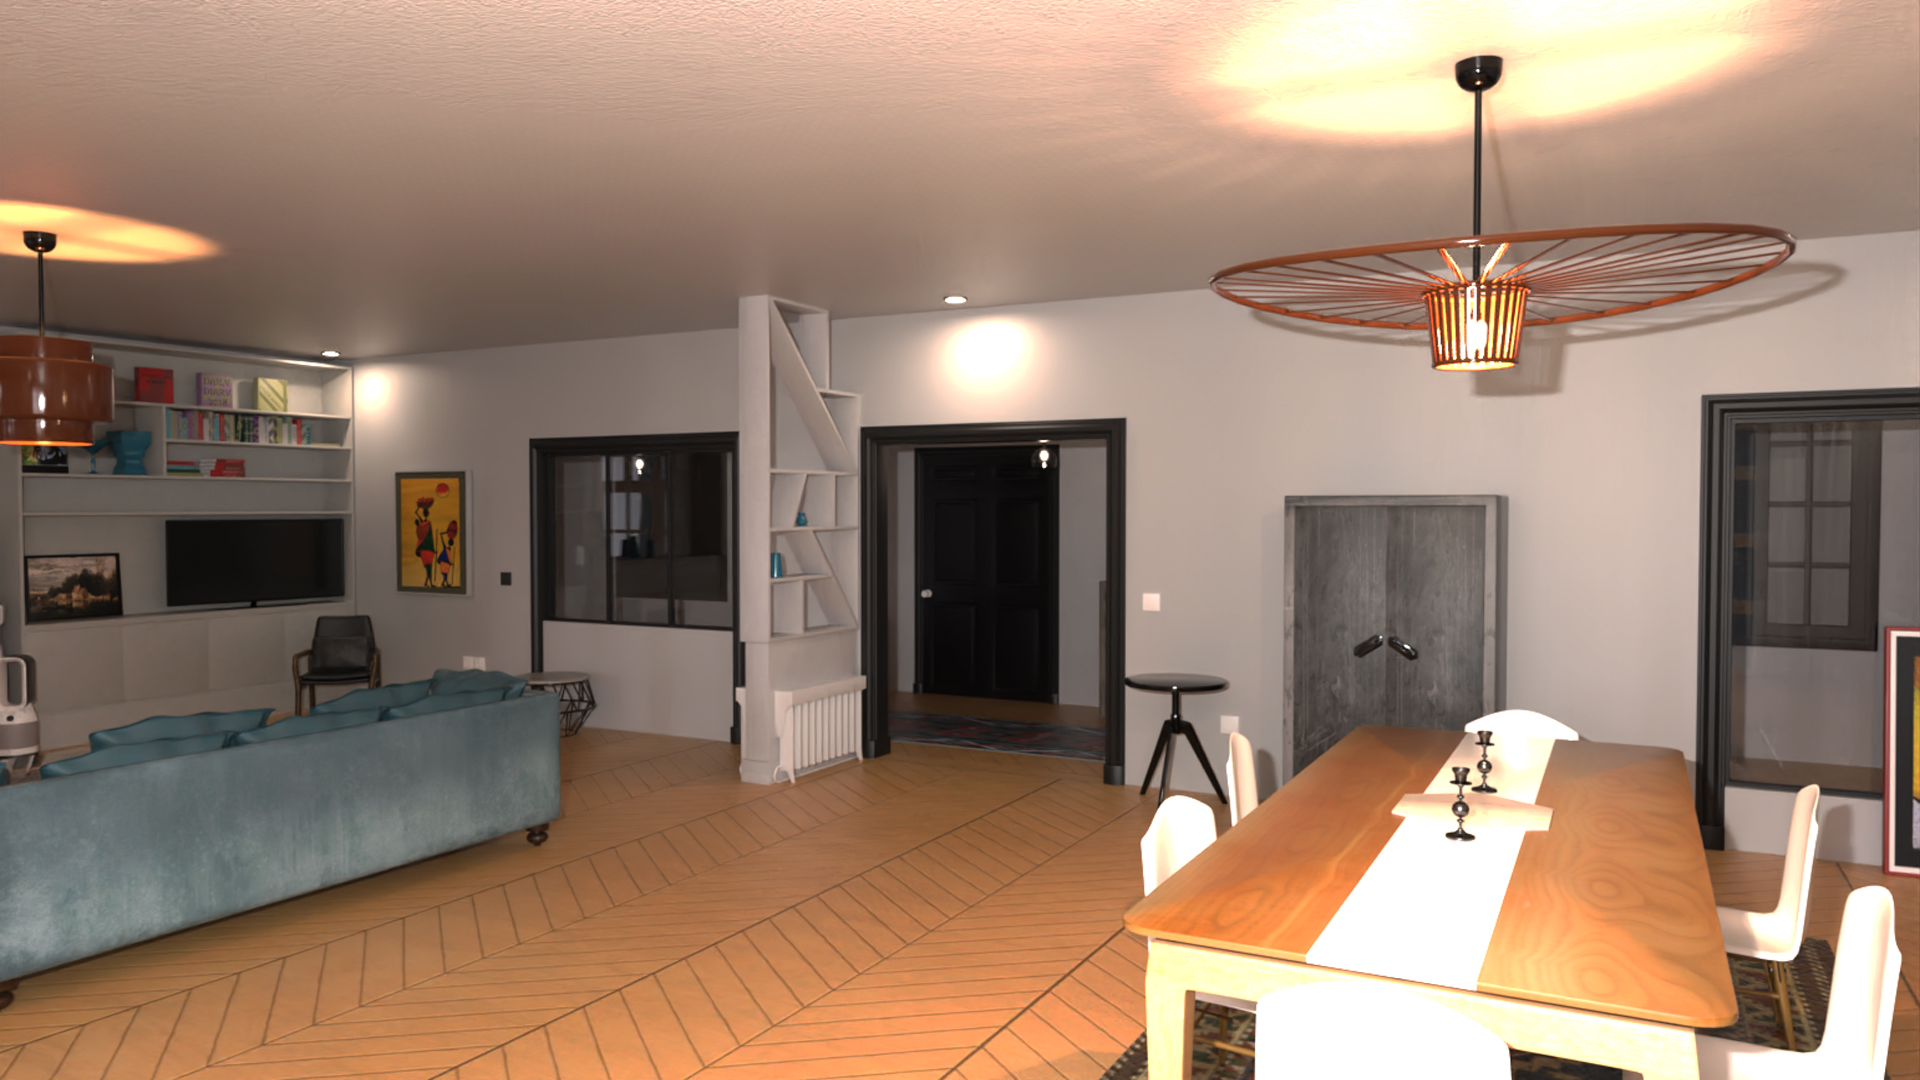 La Casa Apartment by: Tesla3dCorp, 3D Models by Daz 3D